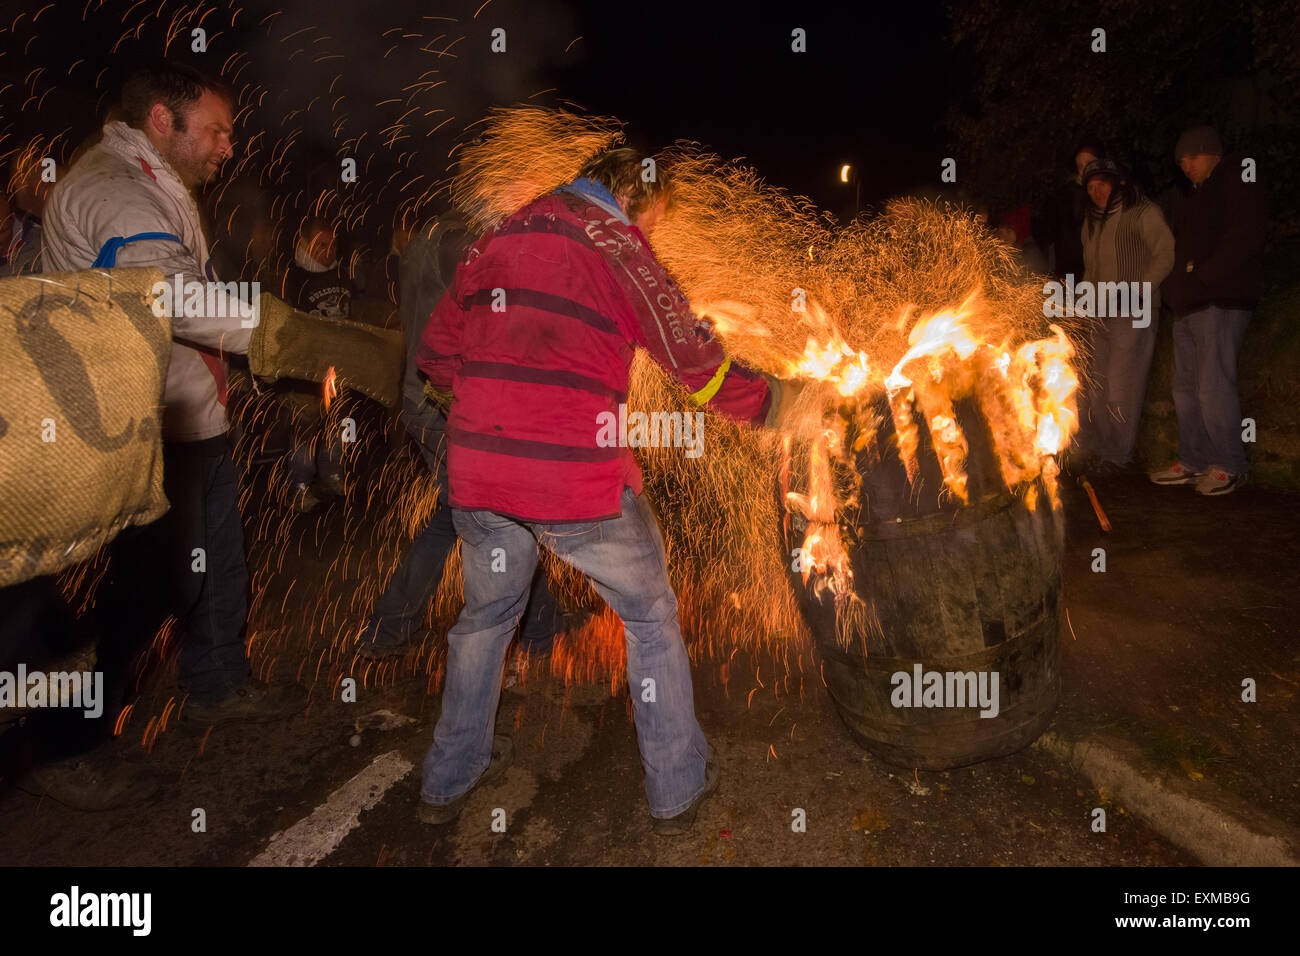 Brennenden Fass aussenden einer Dusche der Funken auf Yonder Straße, Bonfire Night, 5 November, bei den Festspielen Tar Barrel markieren, schon St Mary, Devon, England Stockfoto